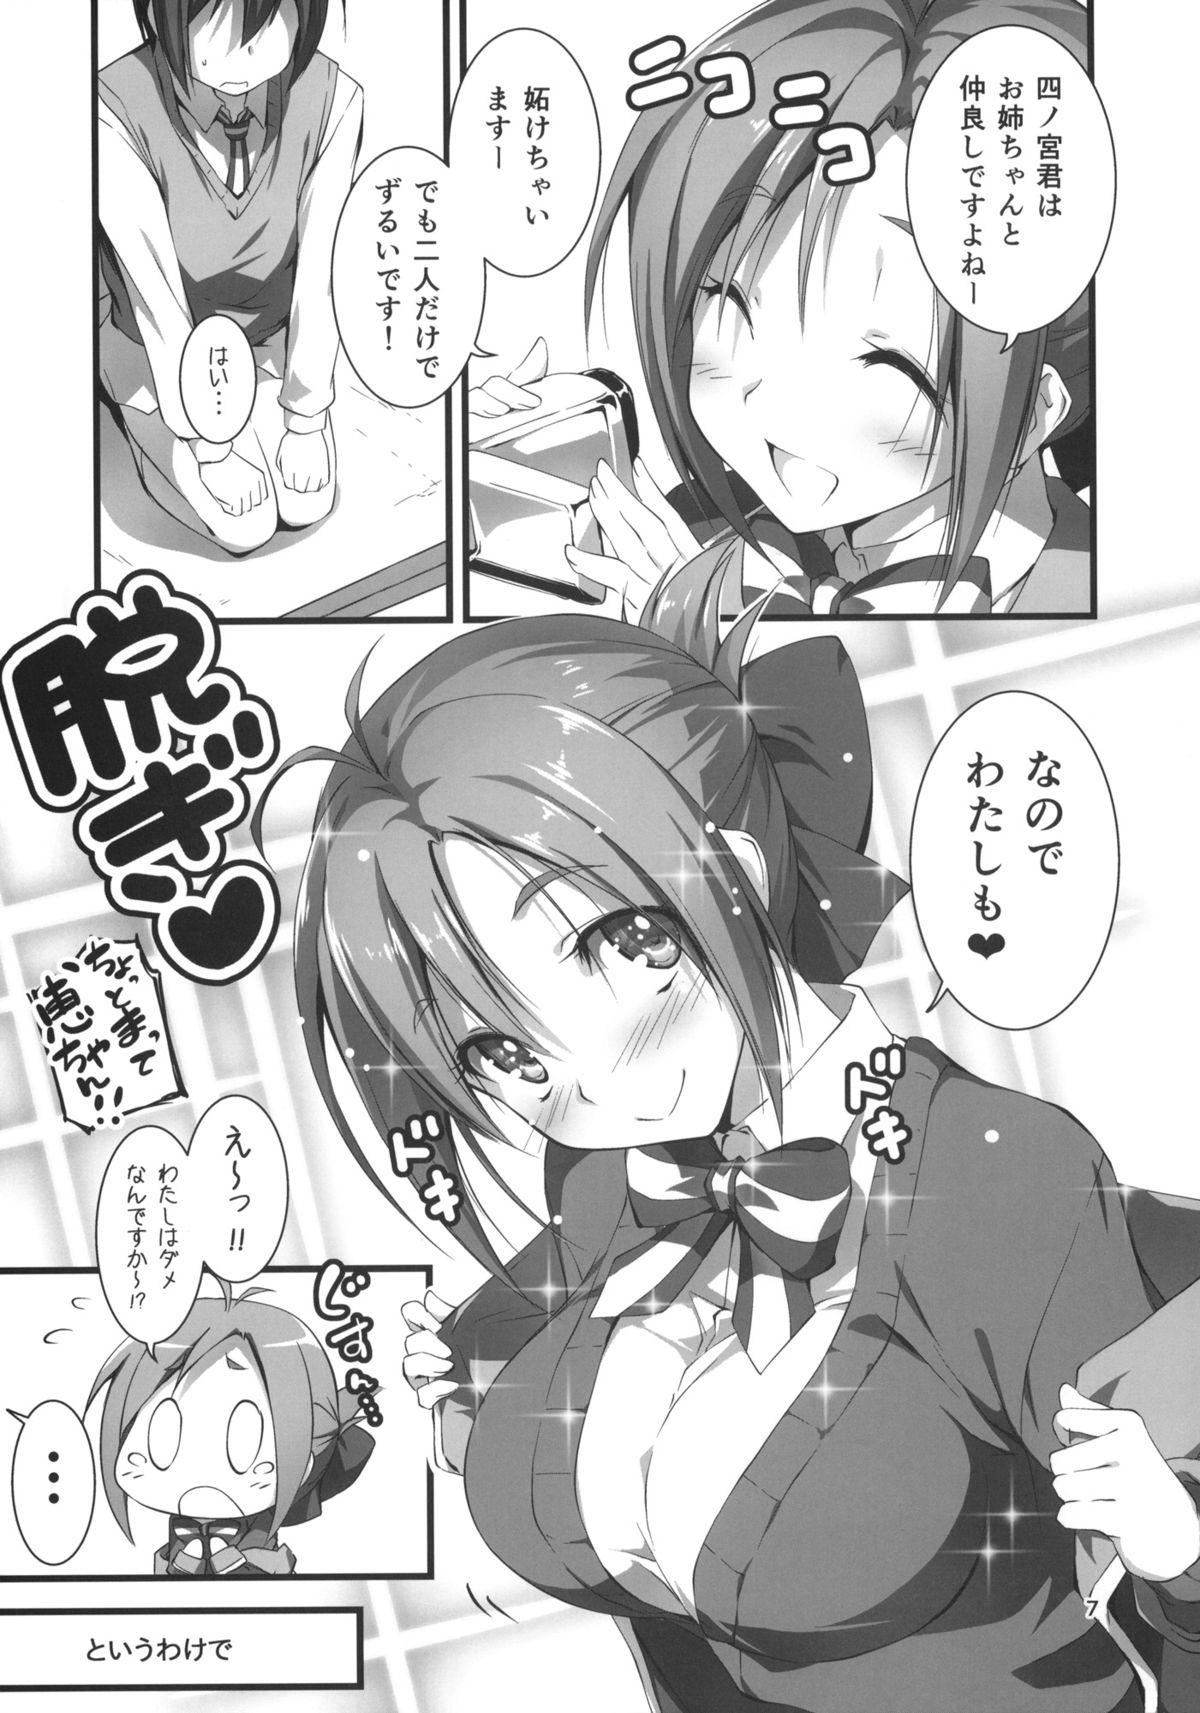 Threesome Megumi-chan wa Momoiro Fantajisuta - Gj-bu Nice - Page 8